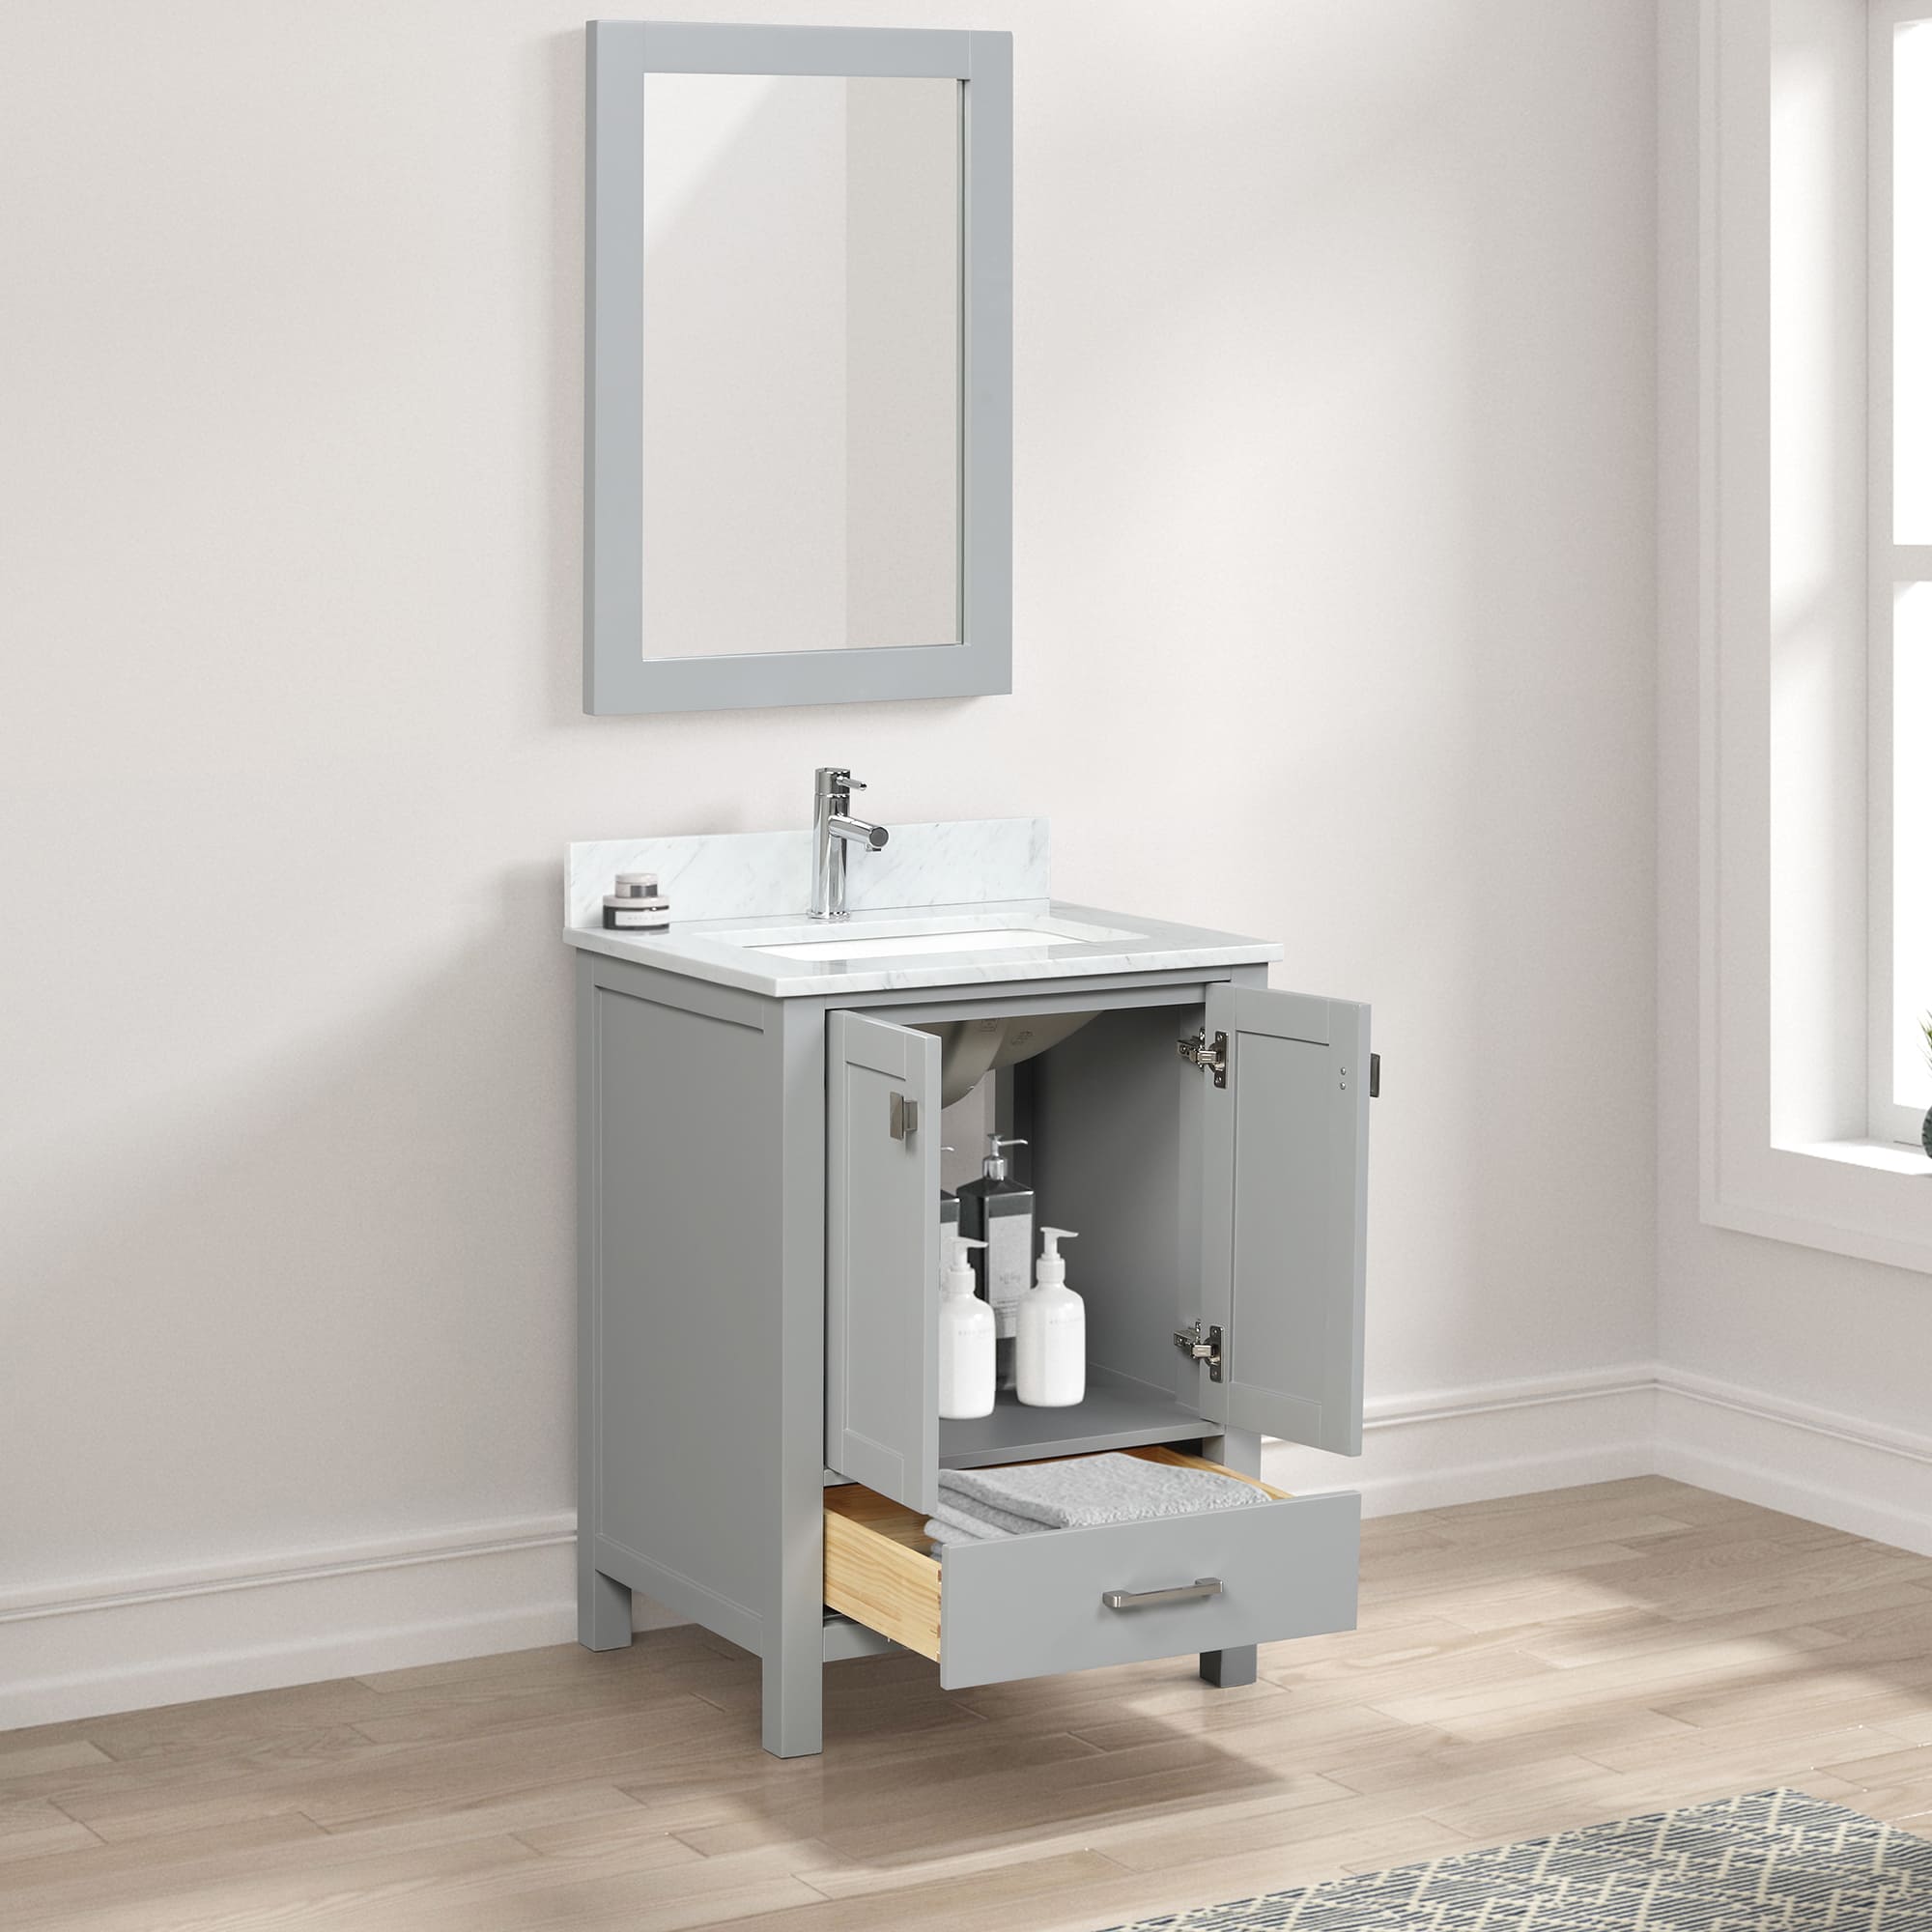 Geneva 24" Bathroom Vanity  #size_24"  #color_metal grey